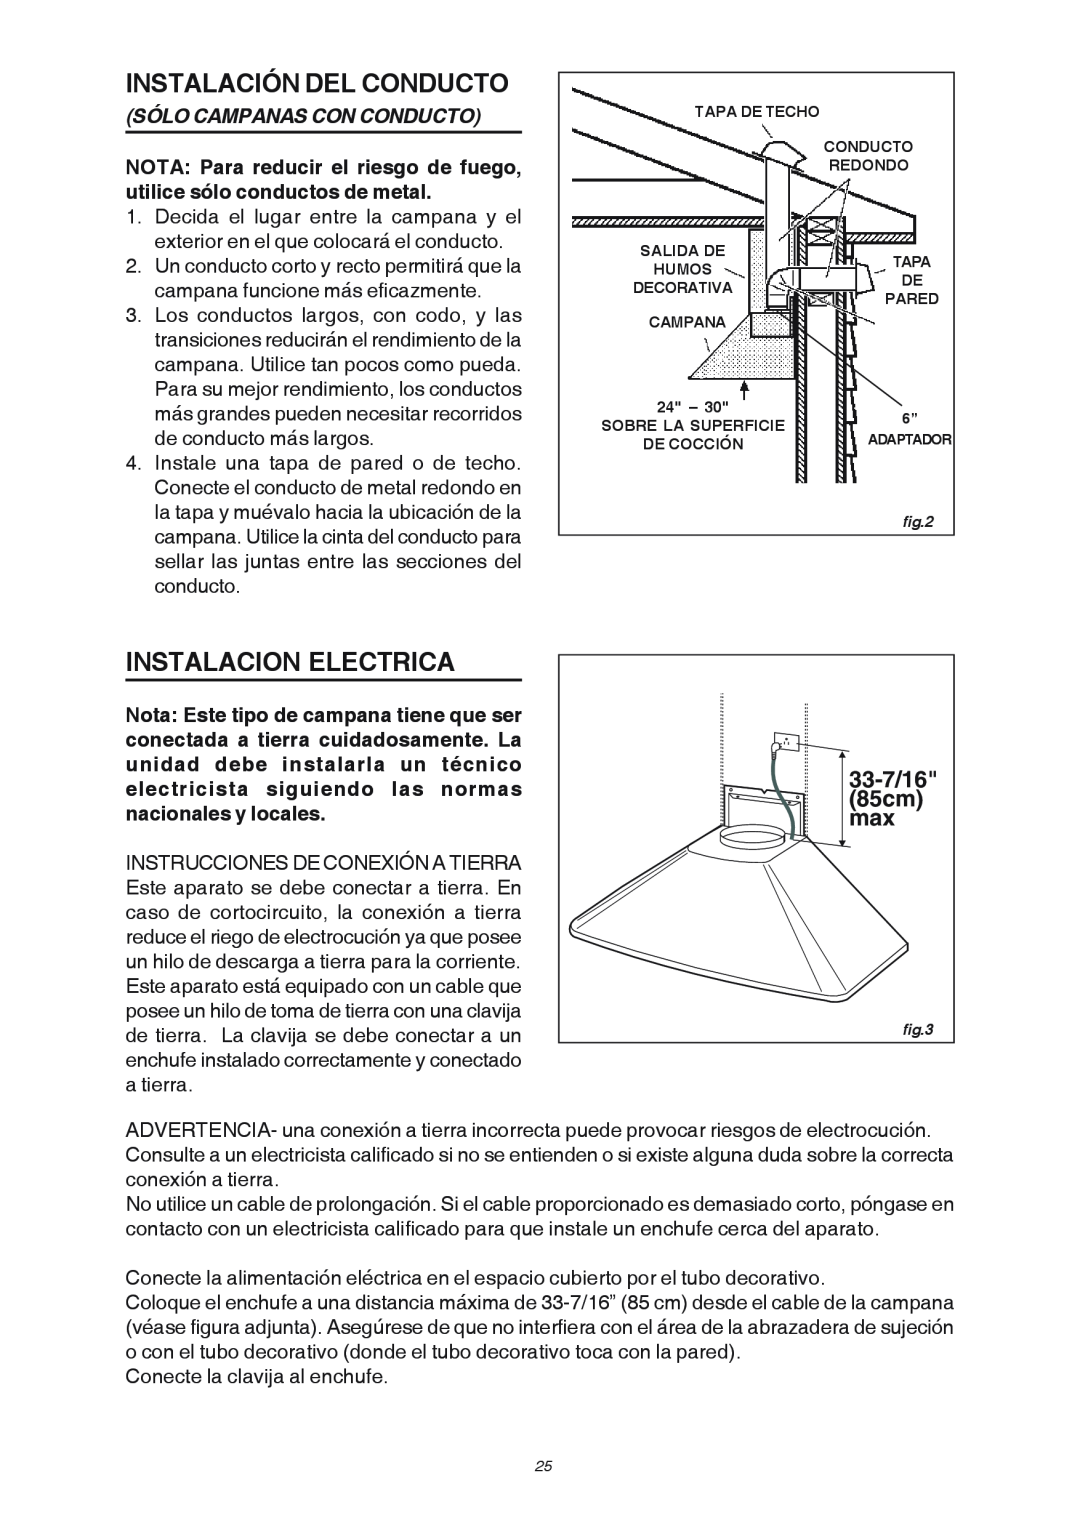 Broan RM503004 manual Instalación Del Conducto, Instalacion Electrica, Sólo Campanas Con Conducto, 85cm, 33-7/16 